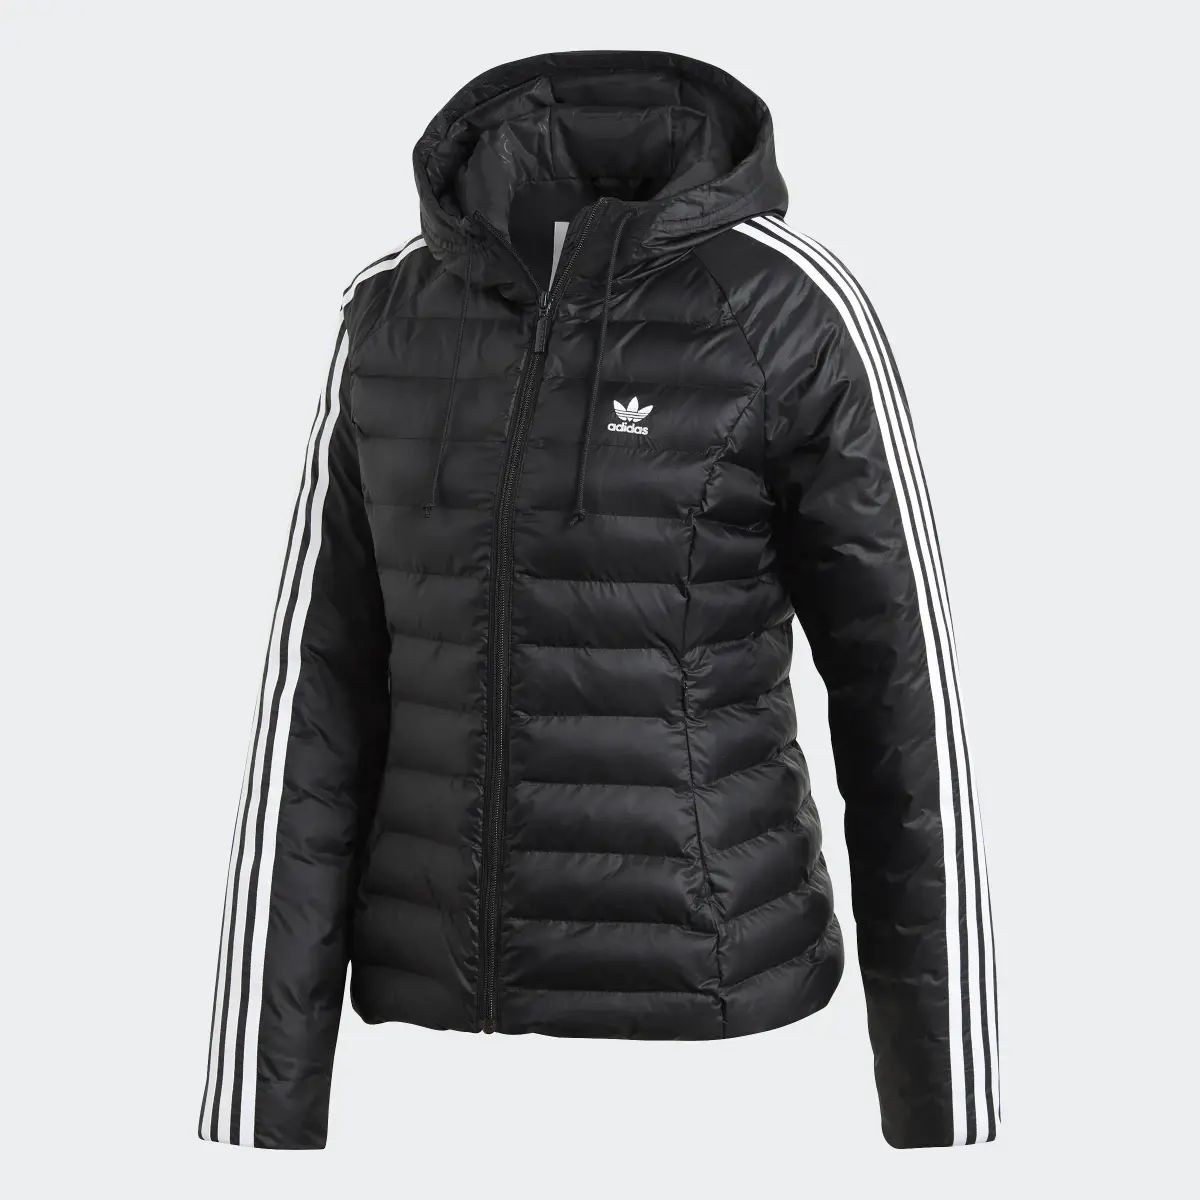 Adidas Slim Jacket. 1